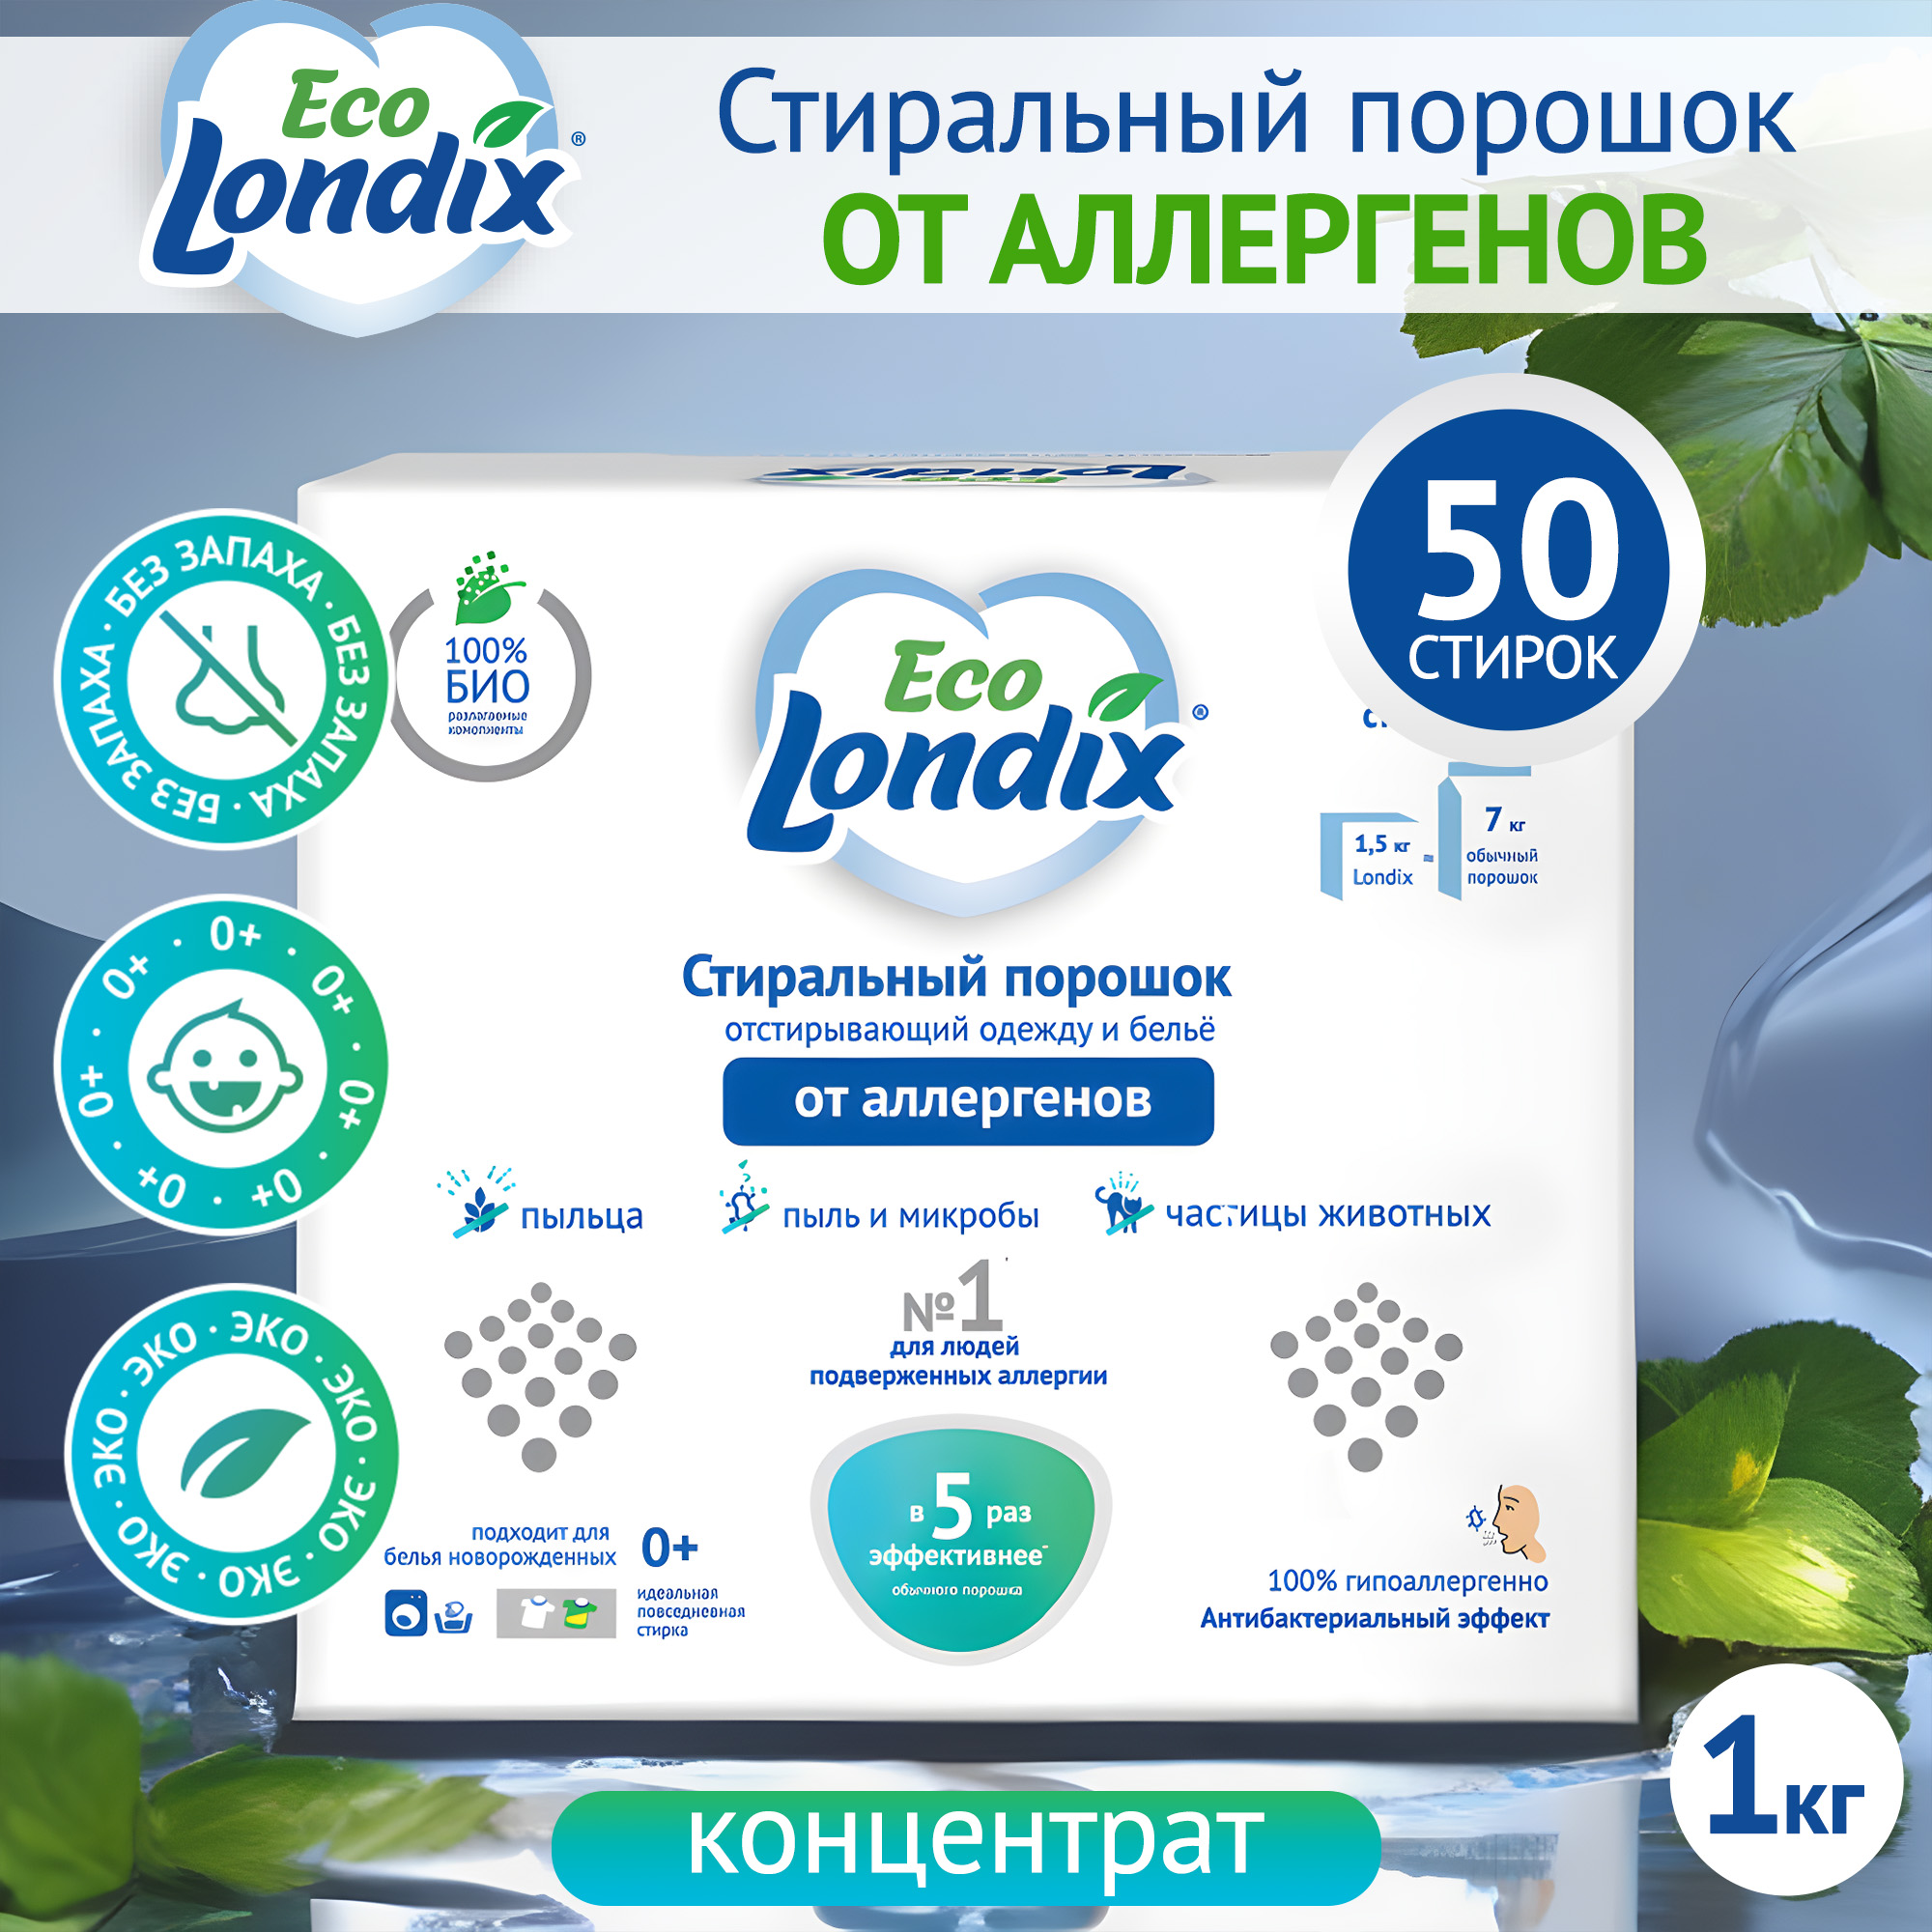 Экологичный гипоаллергенный стиральный порошок Eco Londix, 50 стирок